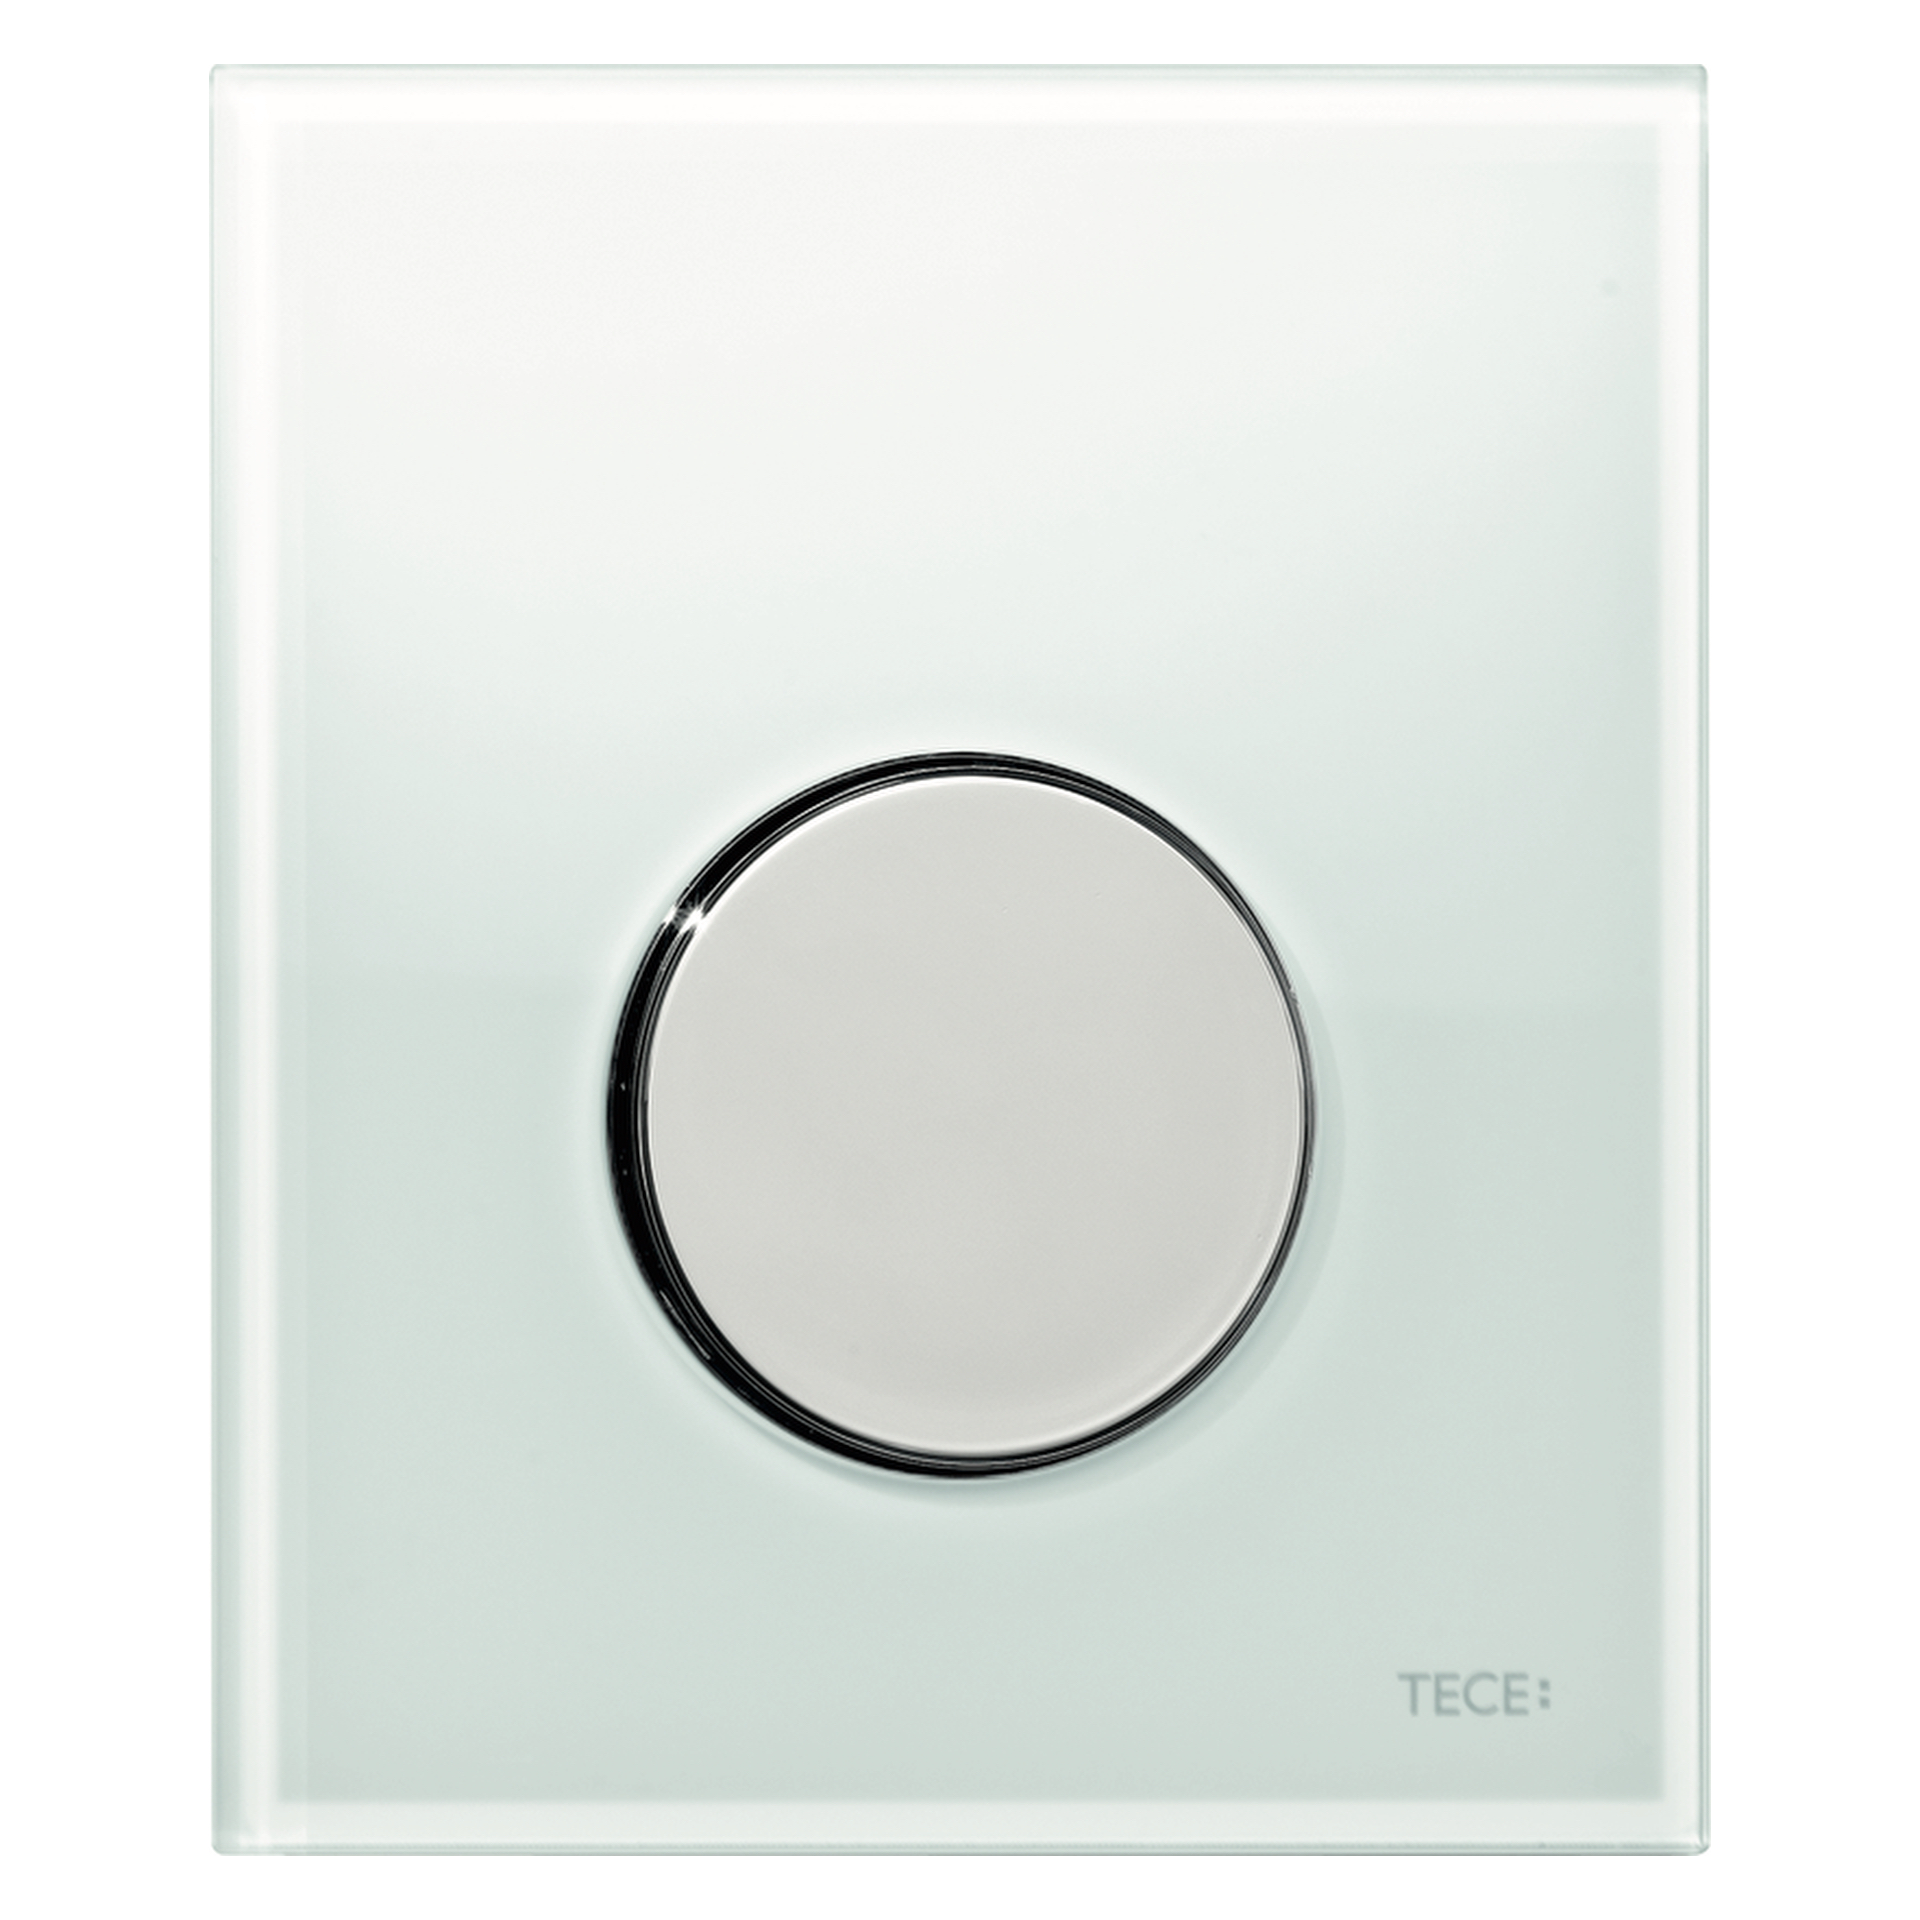 TECEloop Urinal-Betätigungsplatte mit Kartusche Glas weiß Taste Chrom glänzend